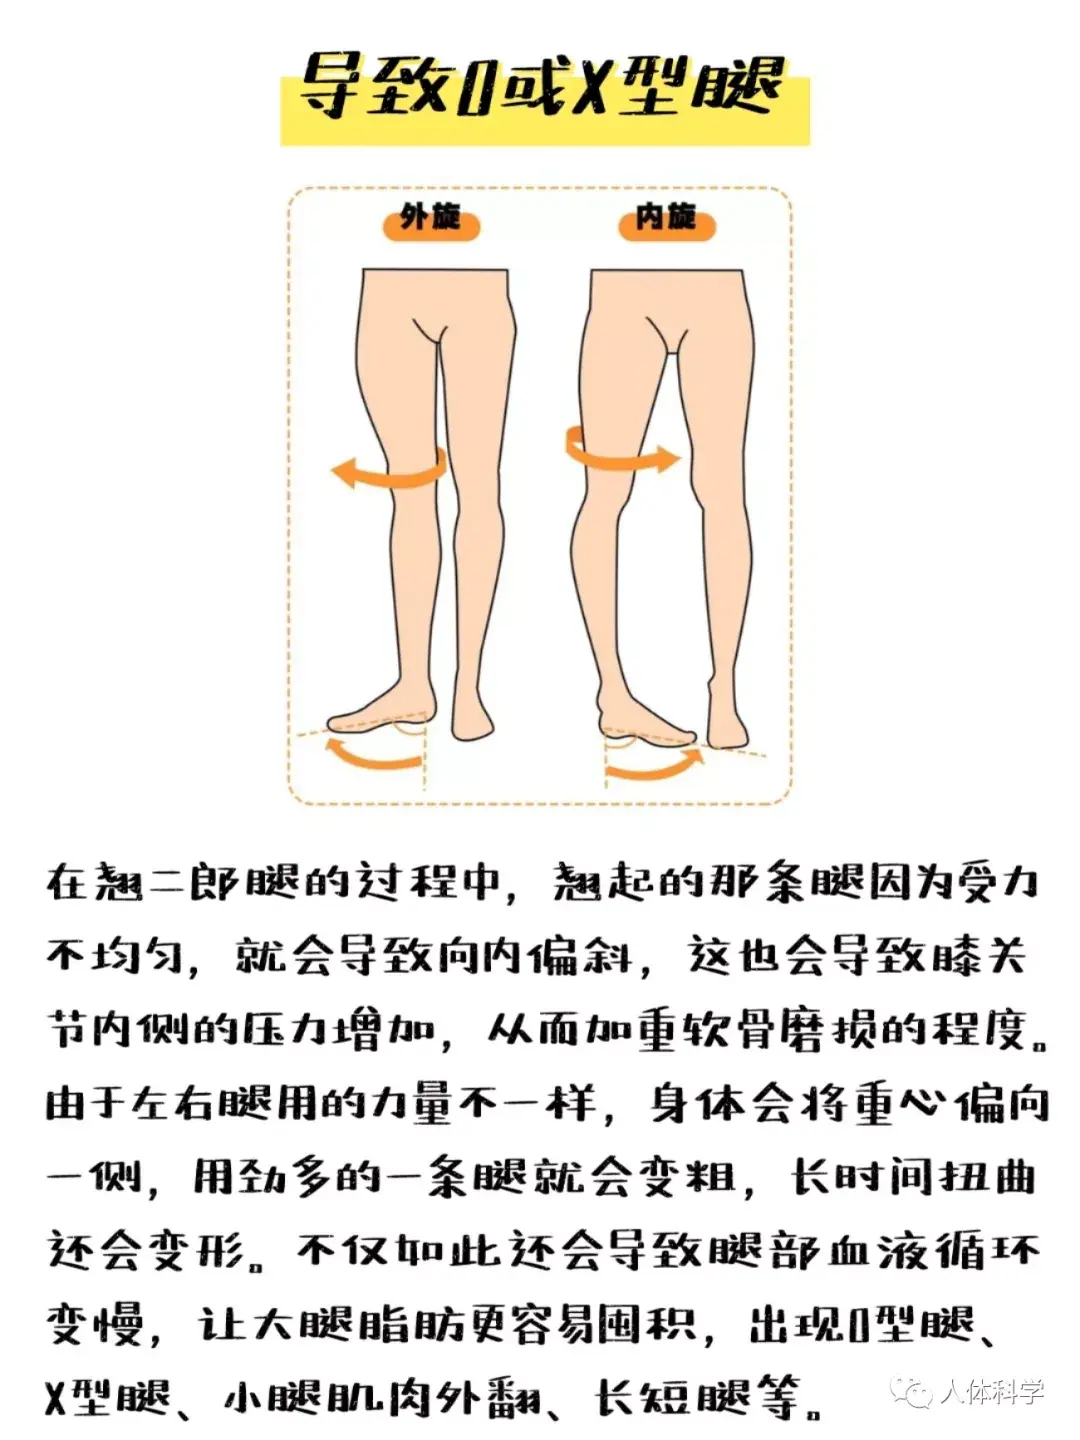 导致o或x型腿在翘二郎腿的过程中,翘起的那条腿因为受力不均匀,就会